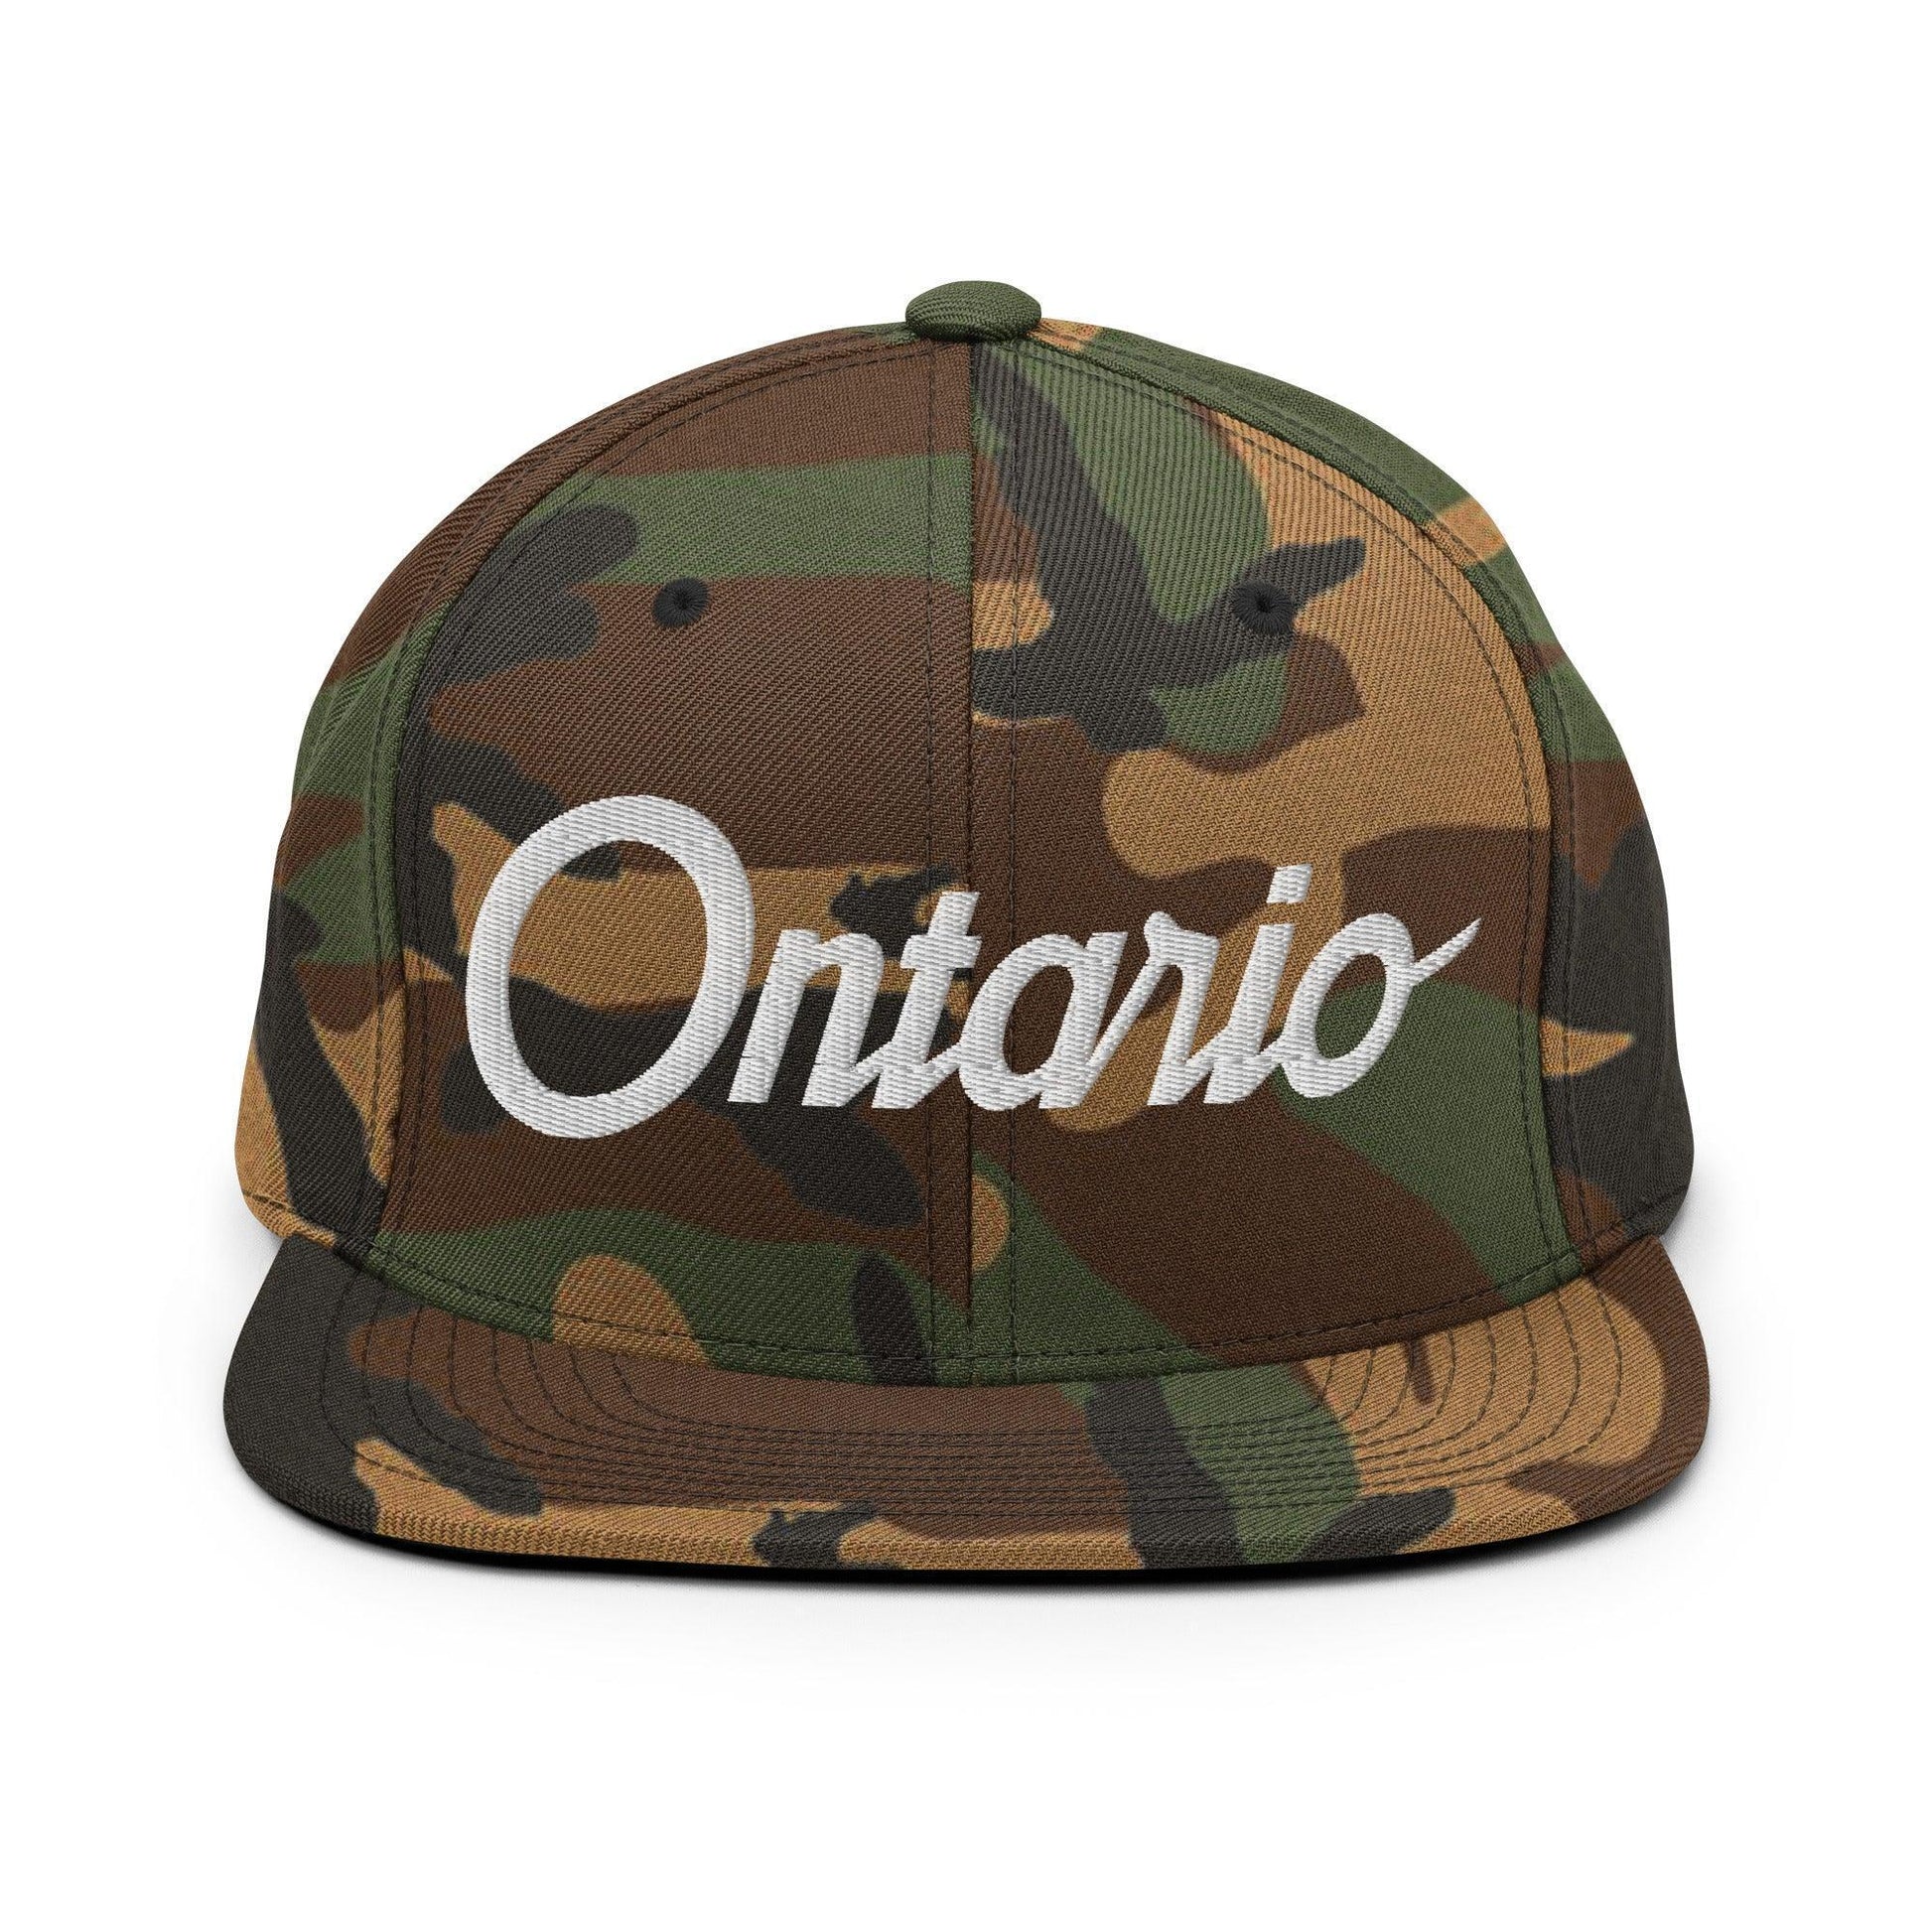 Ontario Script Snapback Hat Green Camo